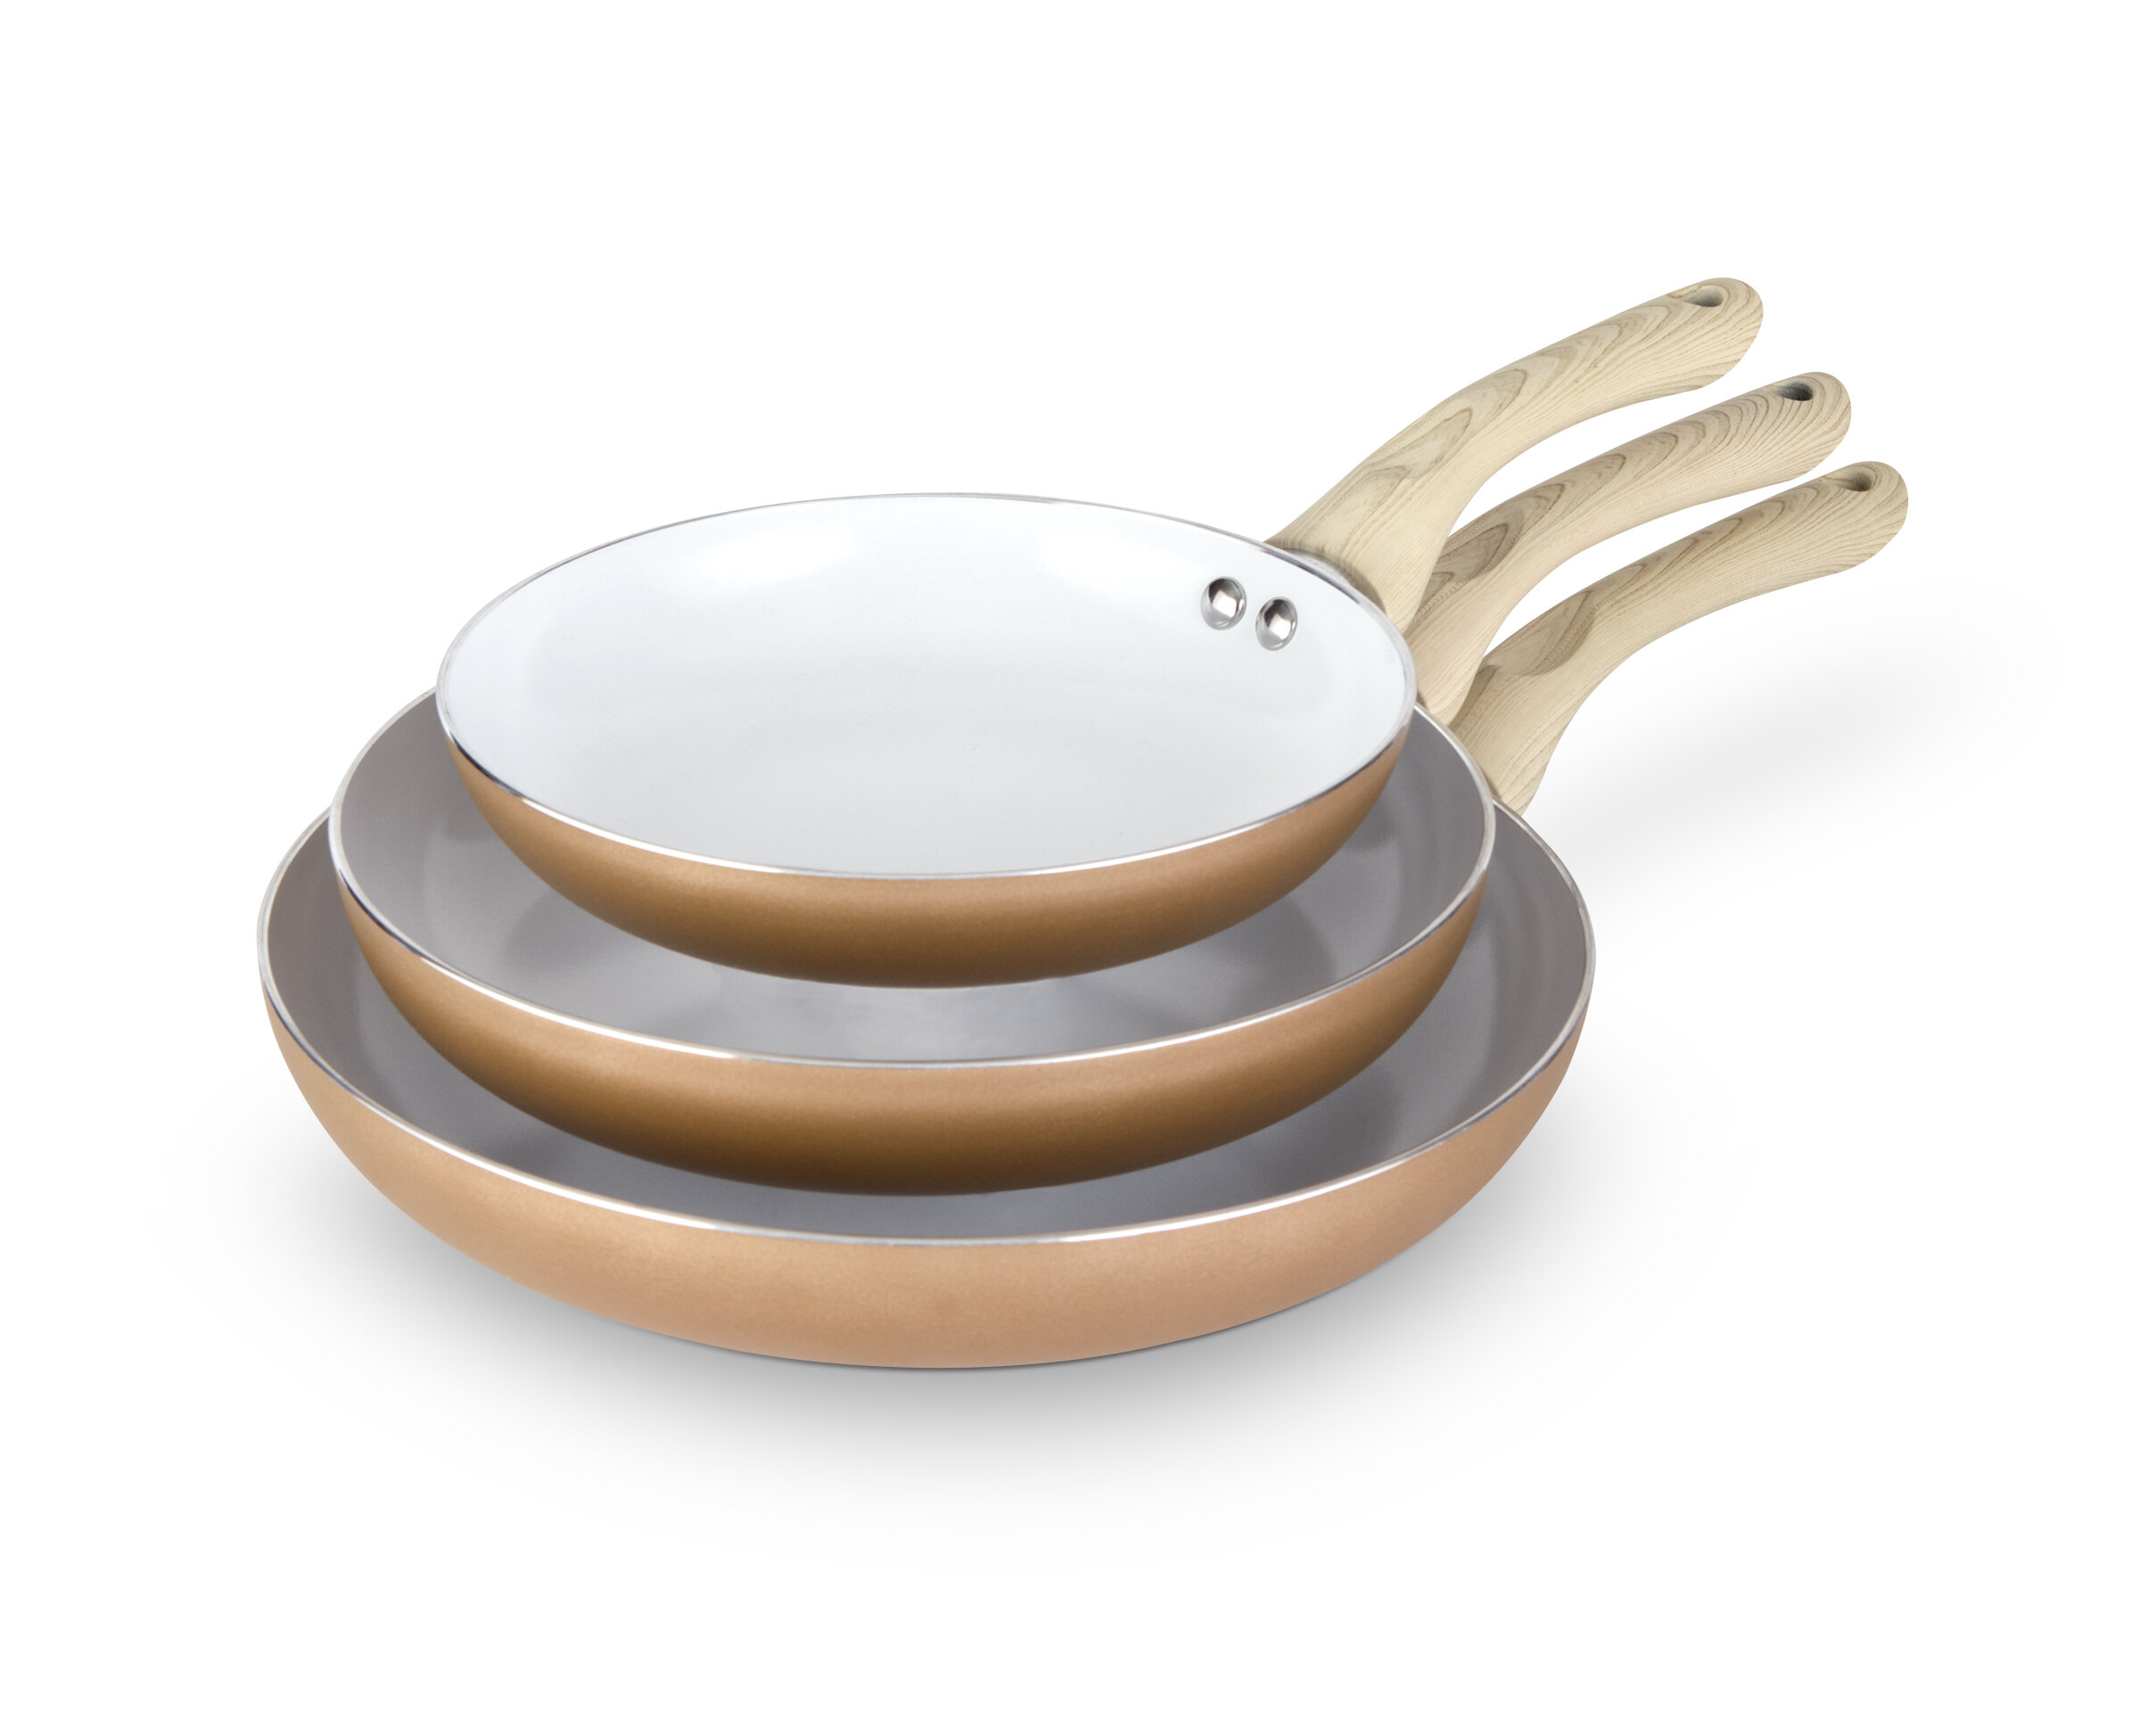 6 PCS URBN-CHEF Ceramic Copper Induction Cooking Pots Lid Saucepans  Cookware Set